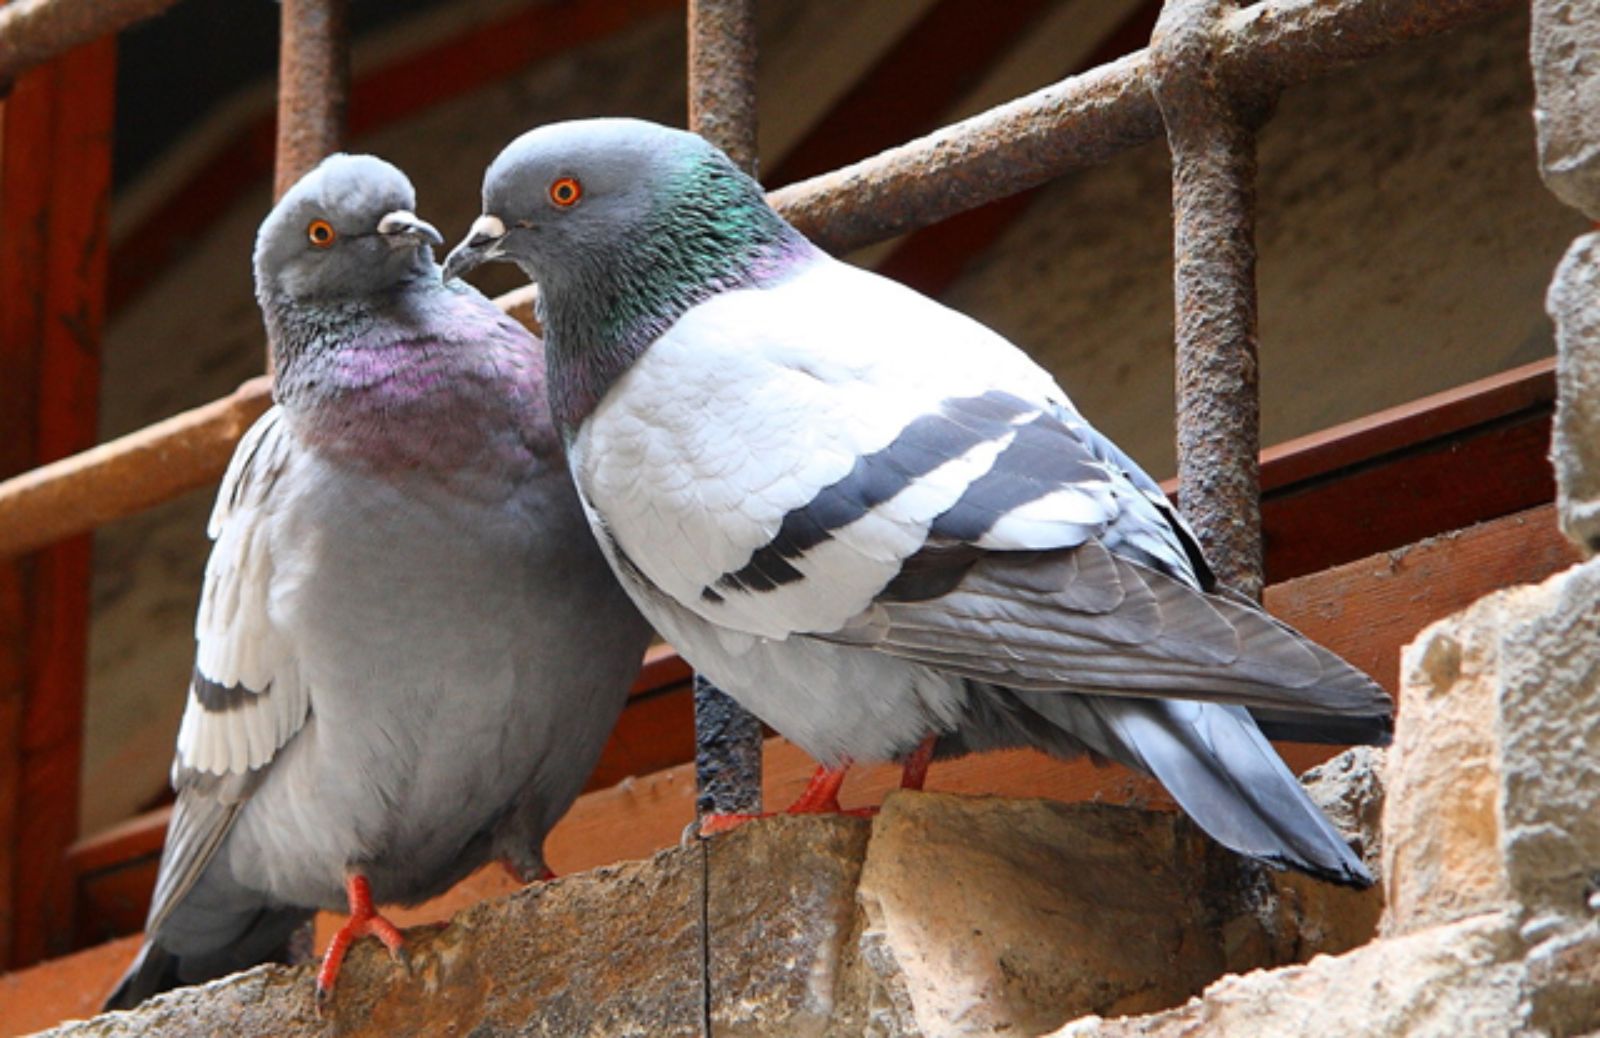 Le 10 regole per una corretta convivenza con i piccioni